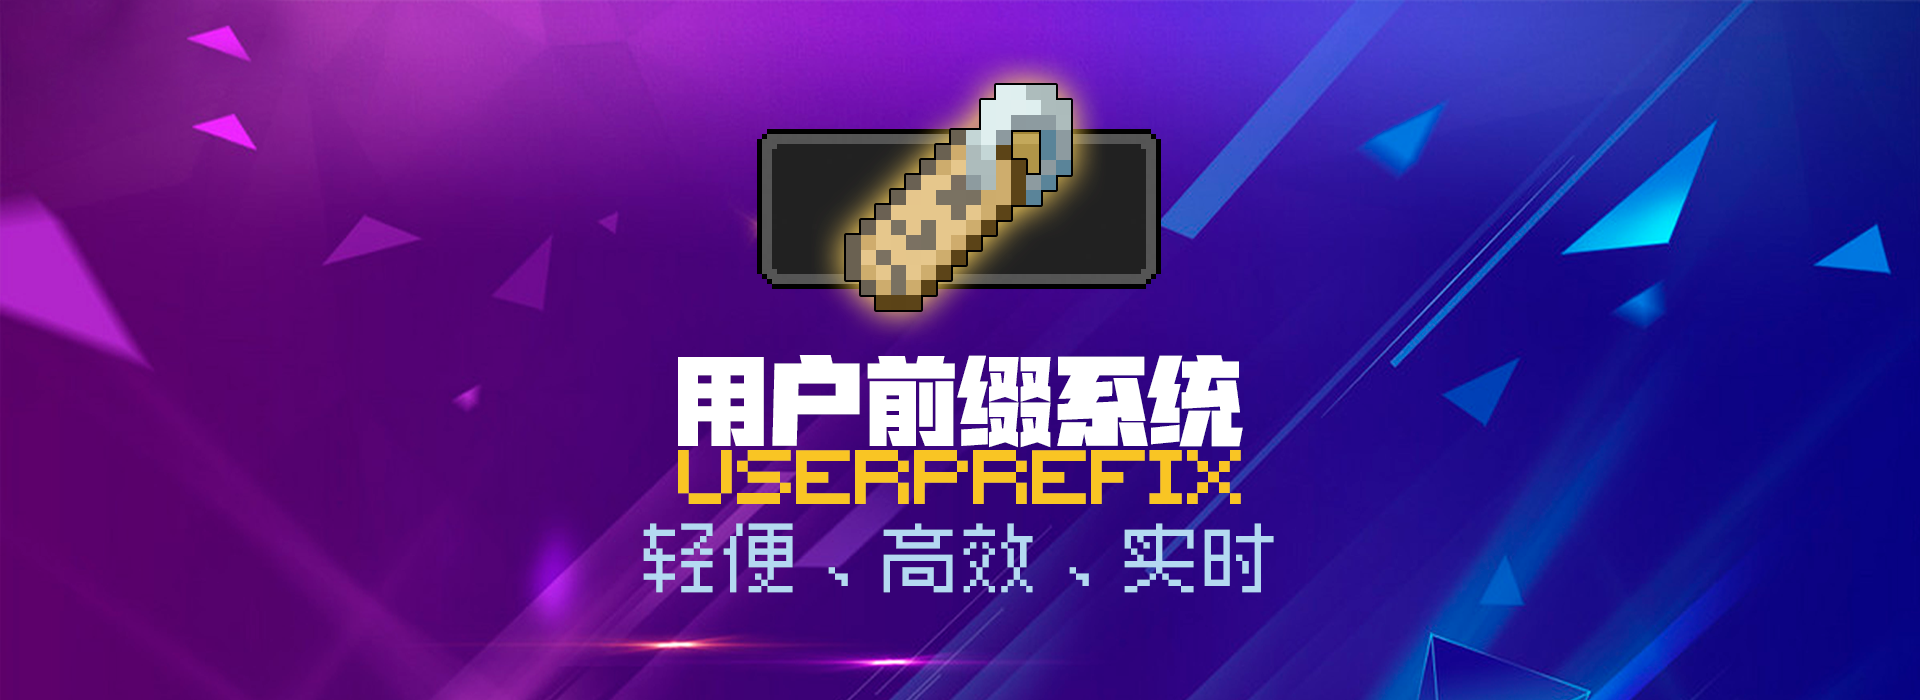 UserPrefix